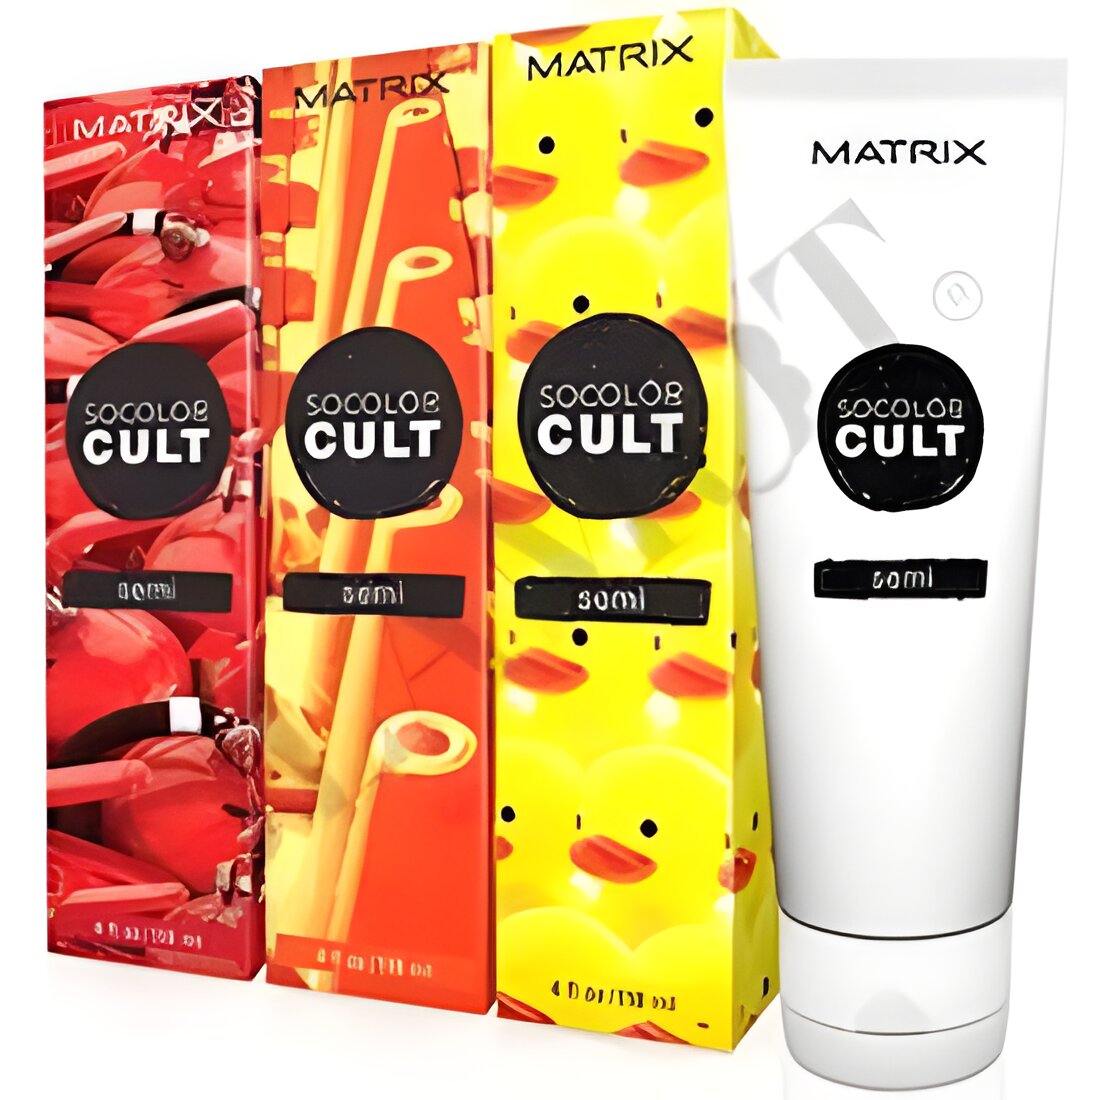 Free Matrix SoColor Cult Semi-Permanent Hair Color Samples